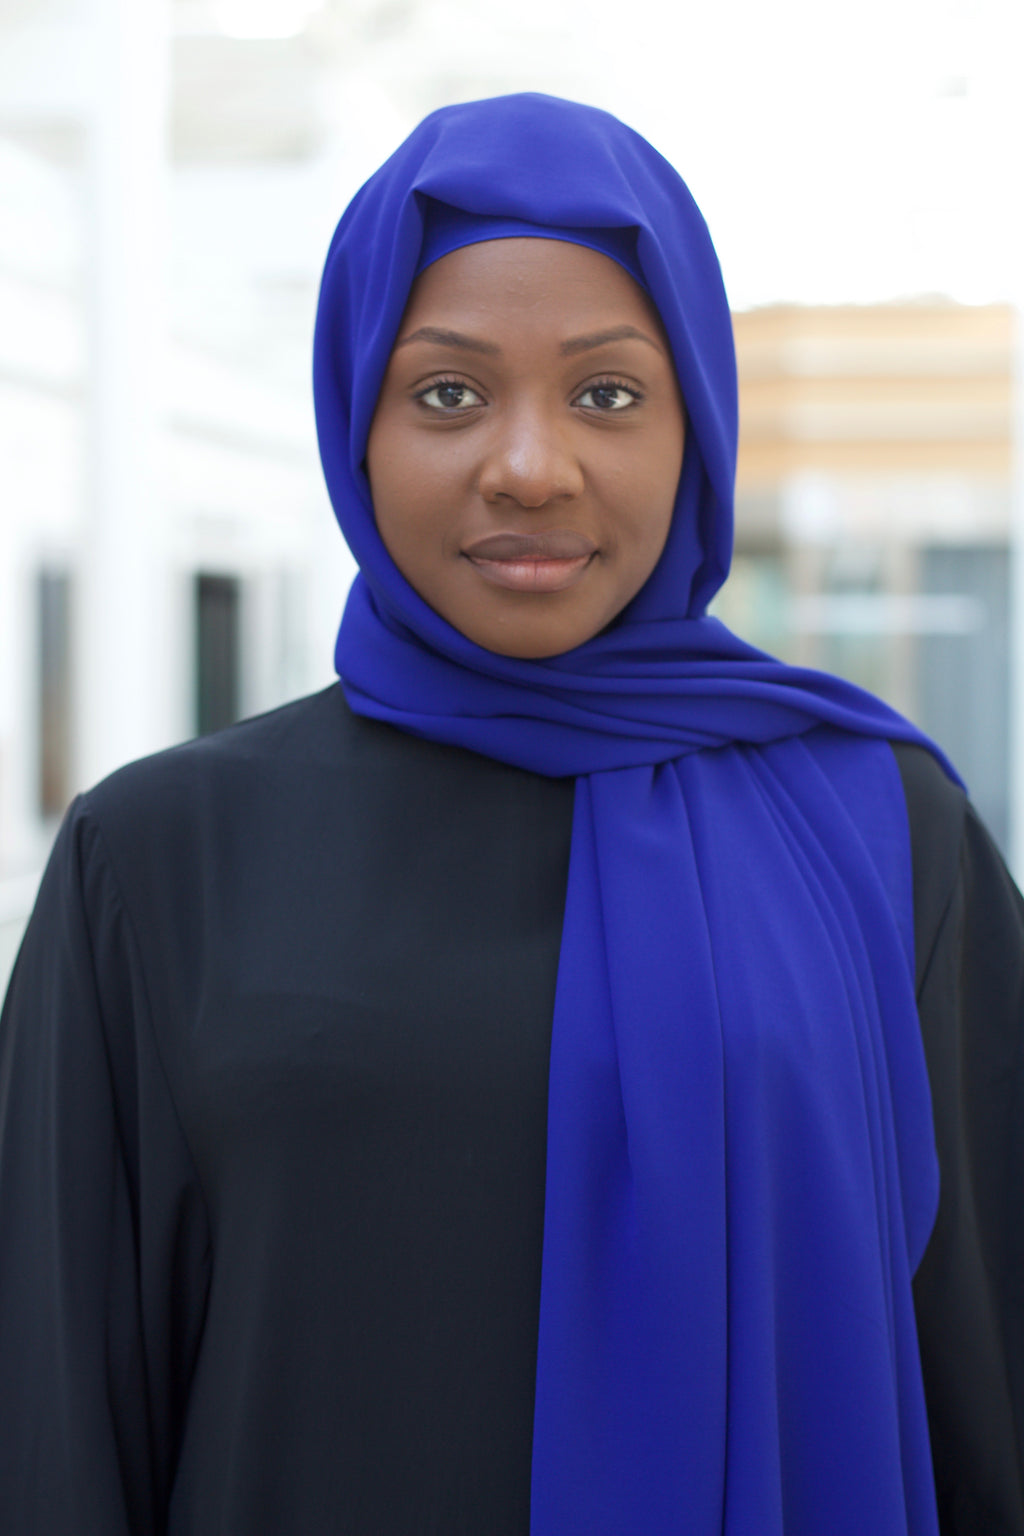 Royal Blue Premium Luxury Chiffon Hijab